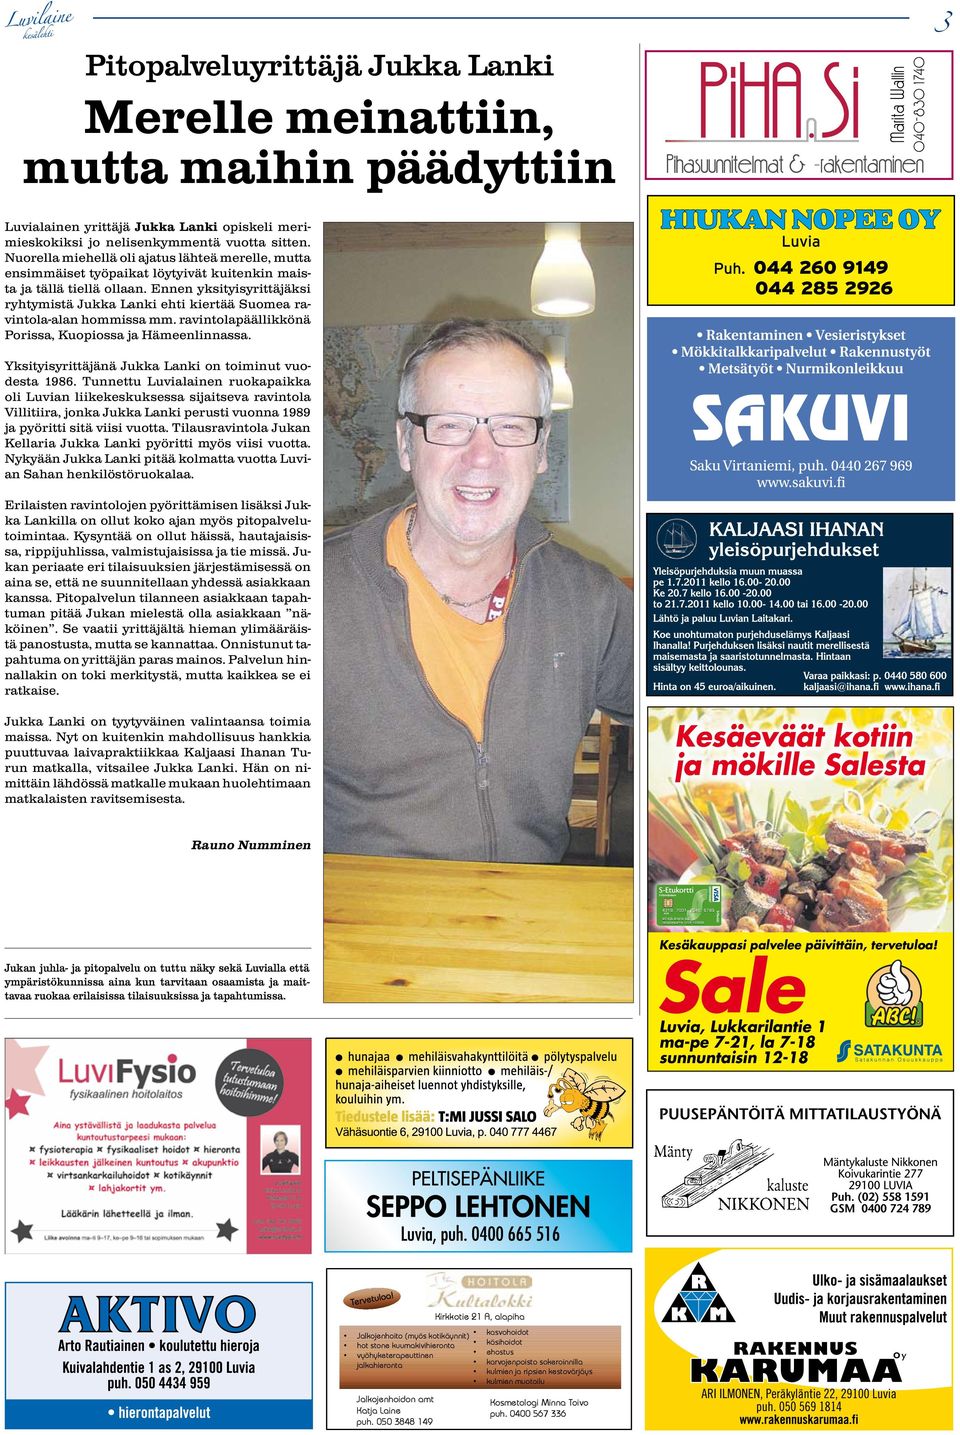 Ennen yksityisyrittäjäksi ryhtymistä Jukka Lanki ehti kiertää Suomea ravintola-alan hommissa mm. ravintolapäällikkönä Porissa, Kuopiossa ja Hämeenlinnassa.